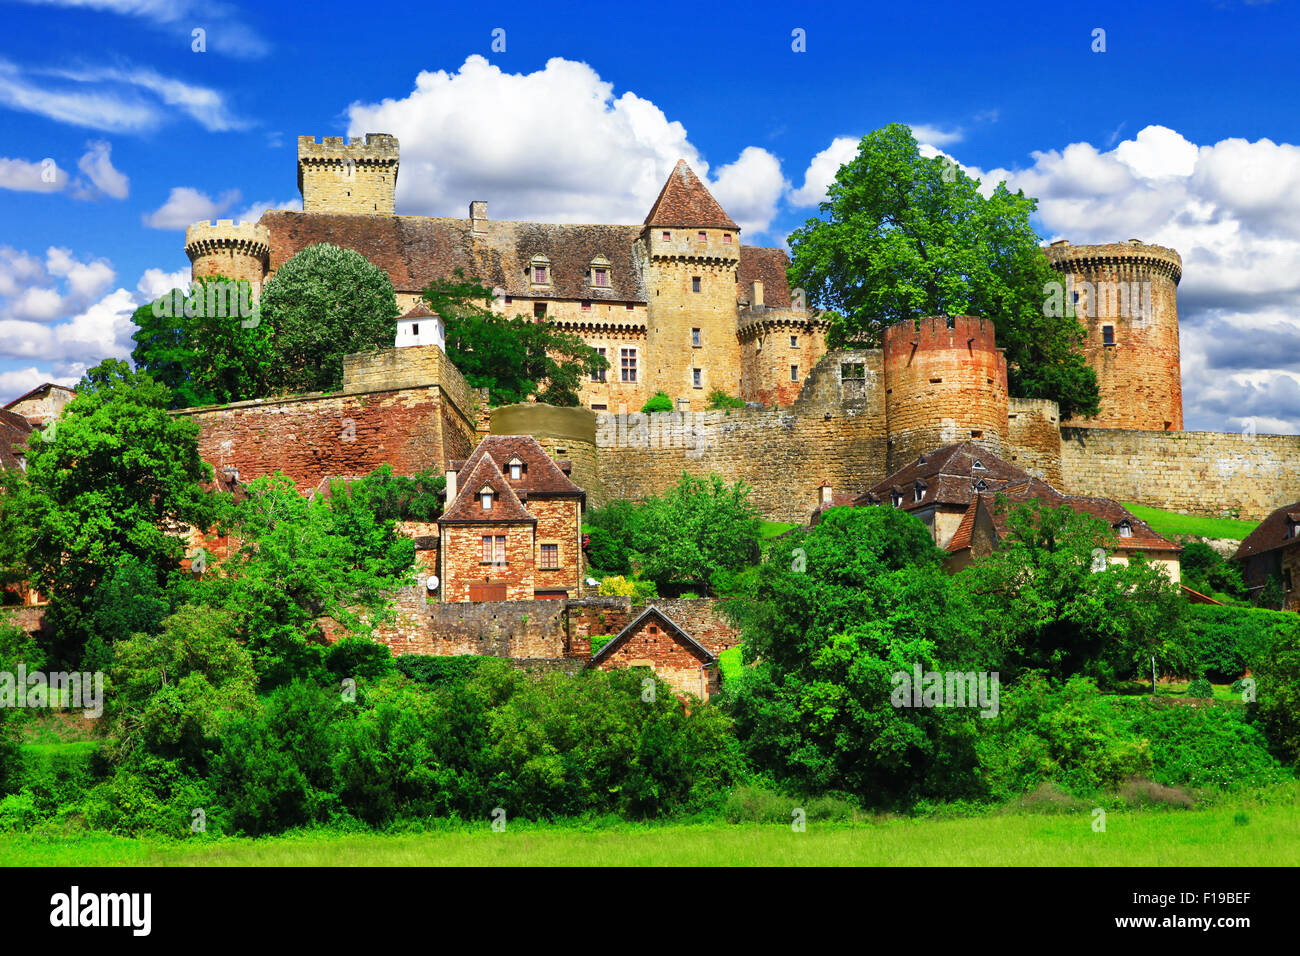 Impressionnant château médiéval de Castelnau en France (Prudhomat, département du Lot), France. Banque D'Images